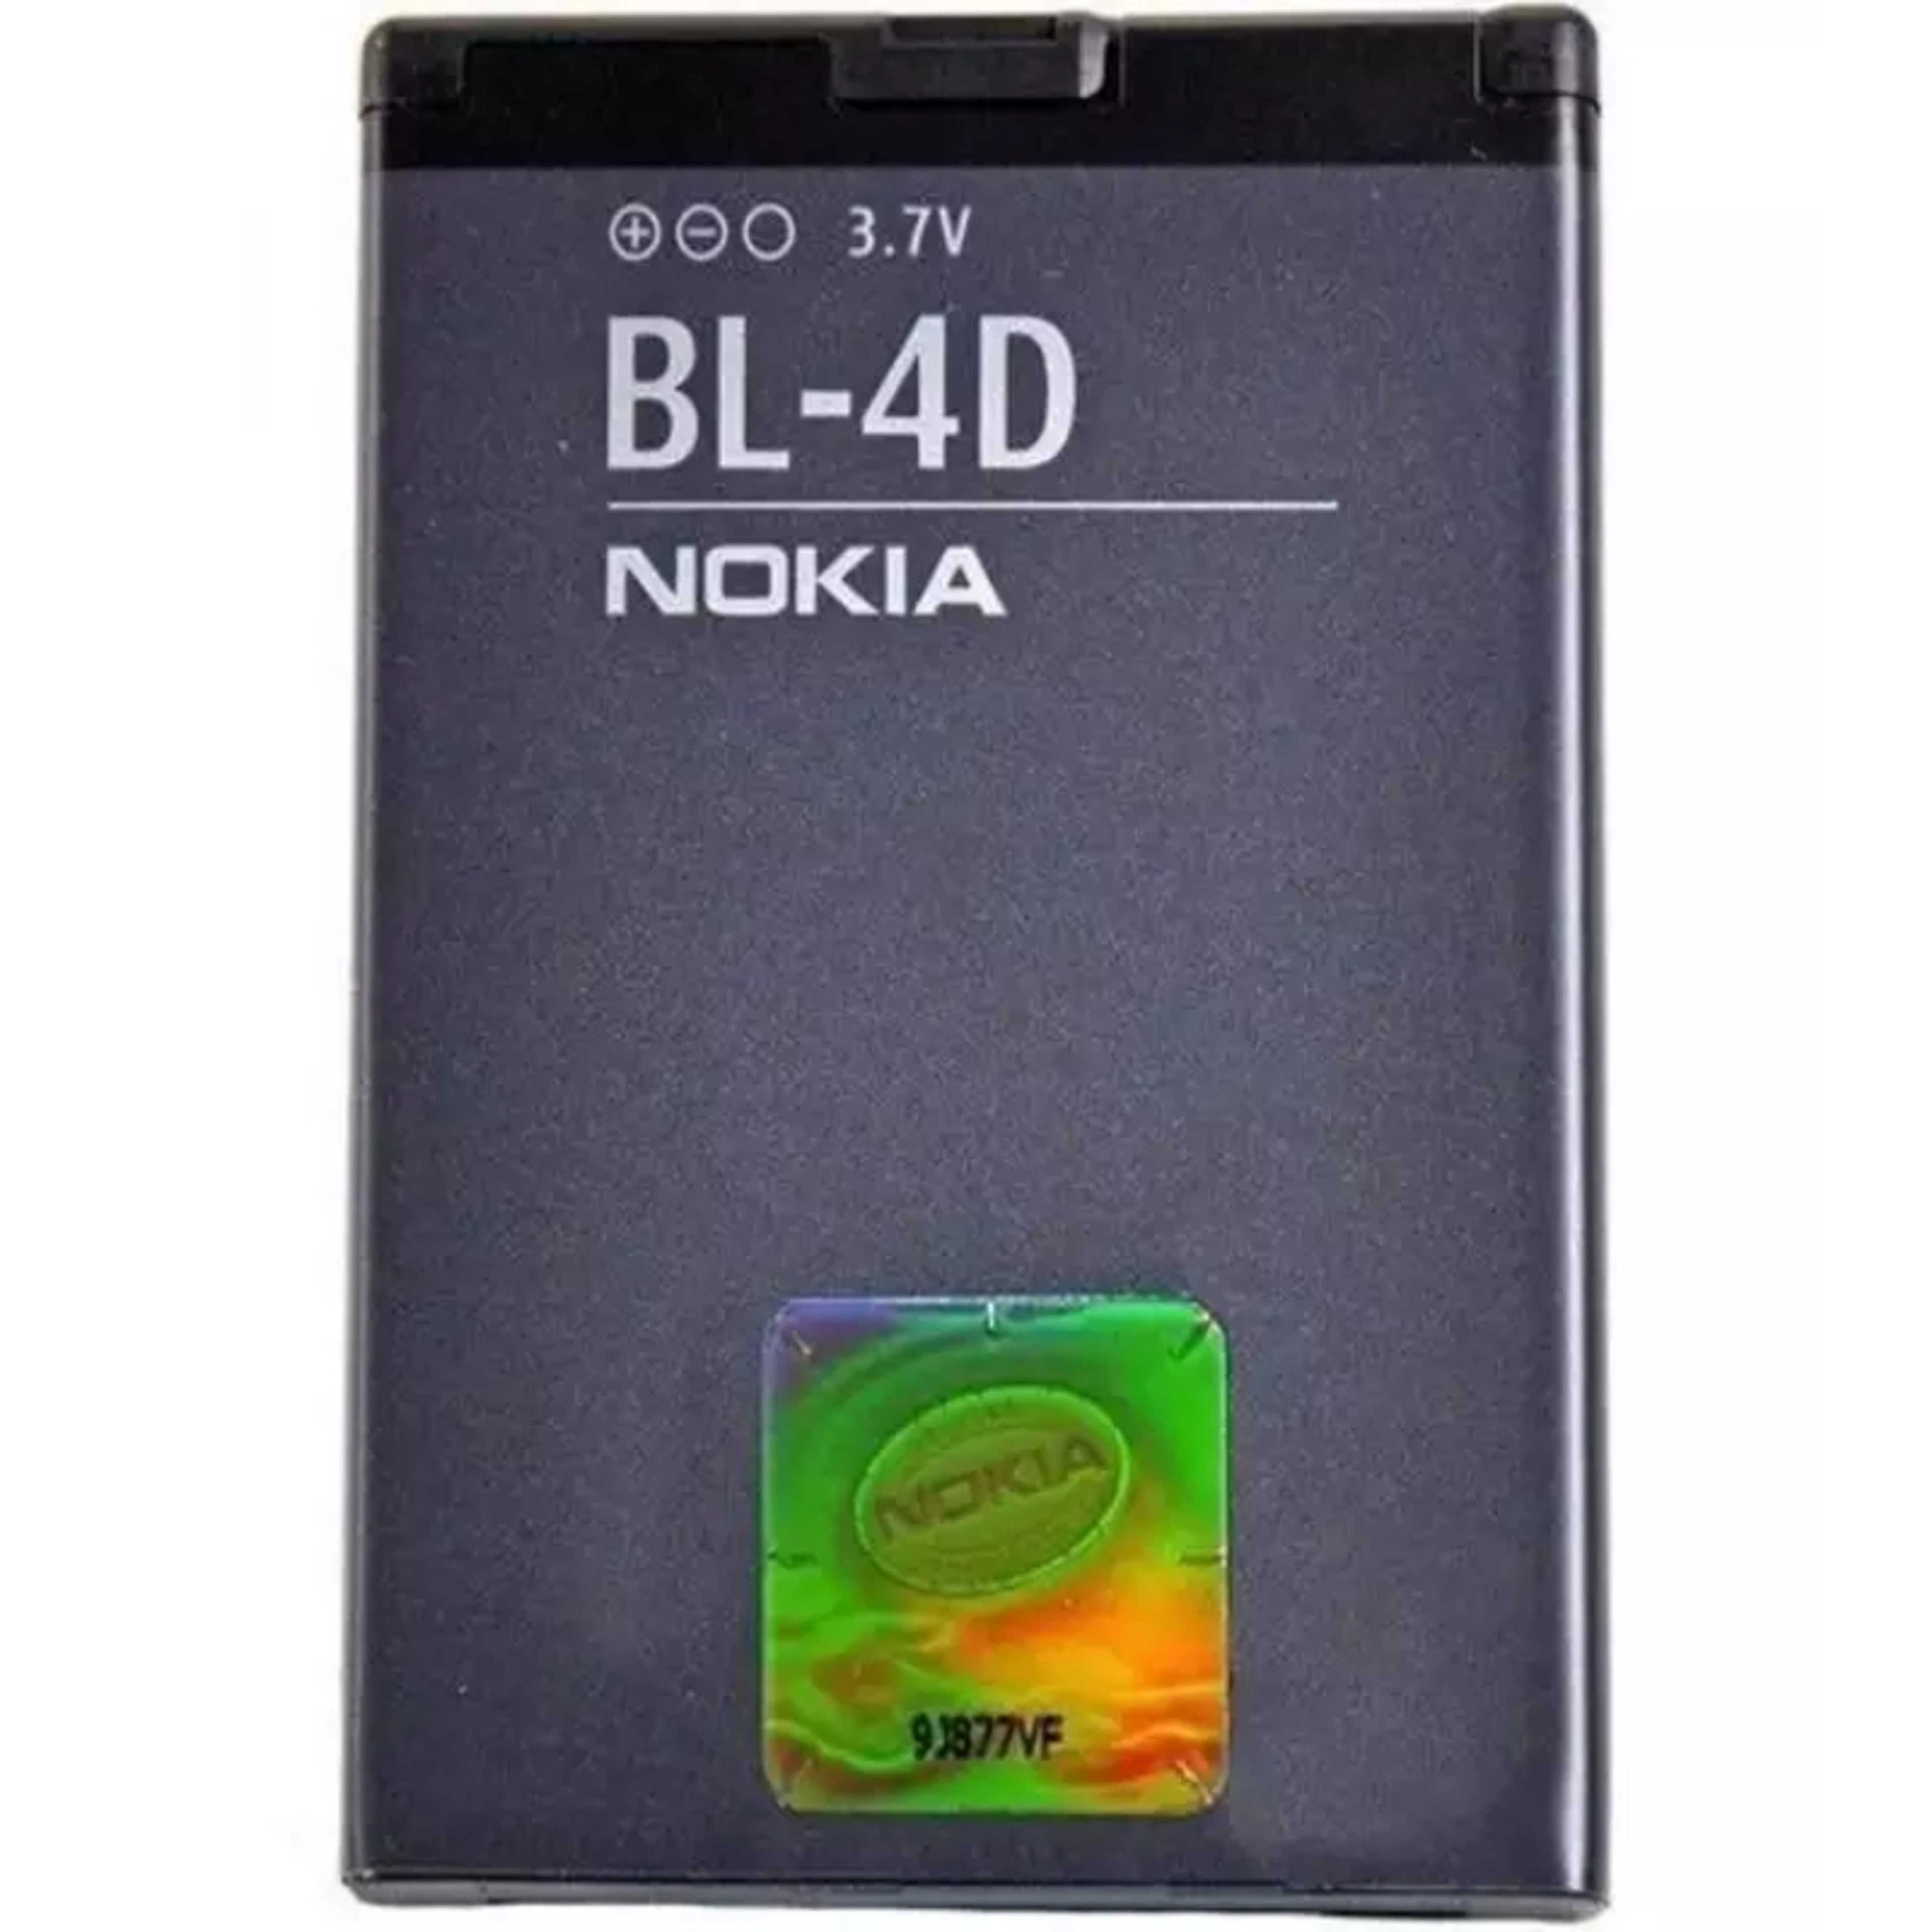 BL-4D Battery For Nokia N97 mini,N8,E5-00 E5 E7 T7 - 1200mAh - Black